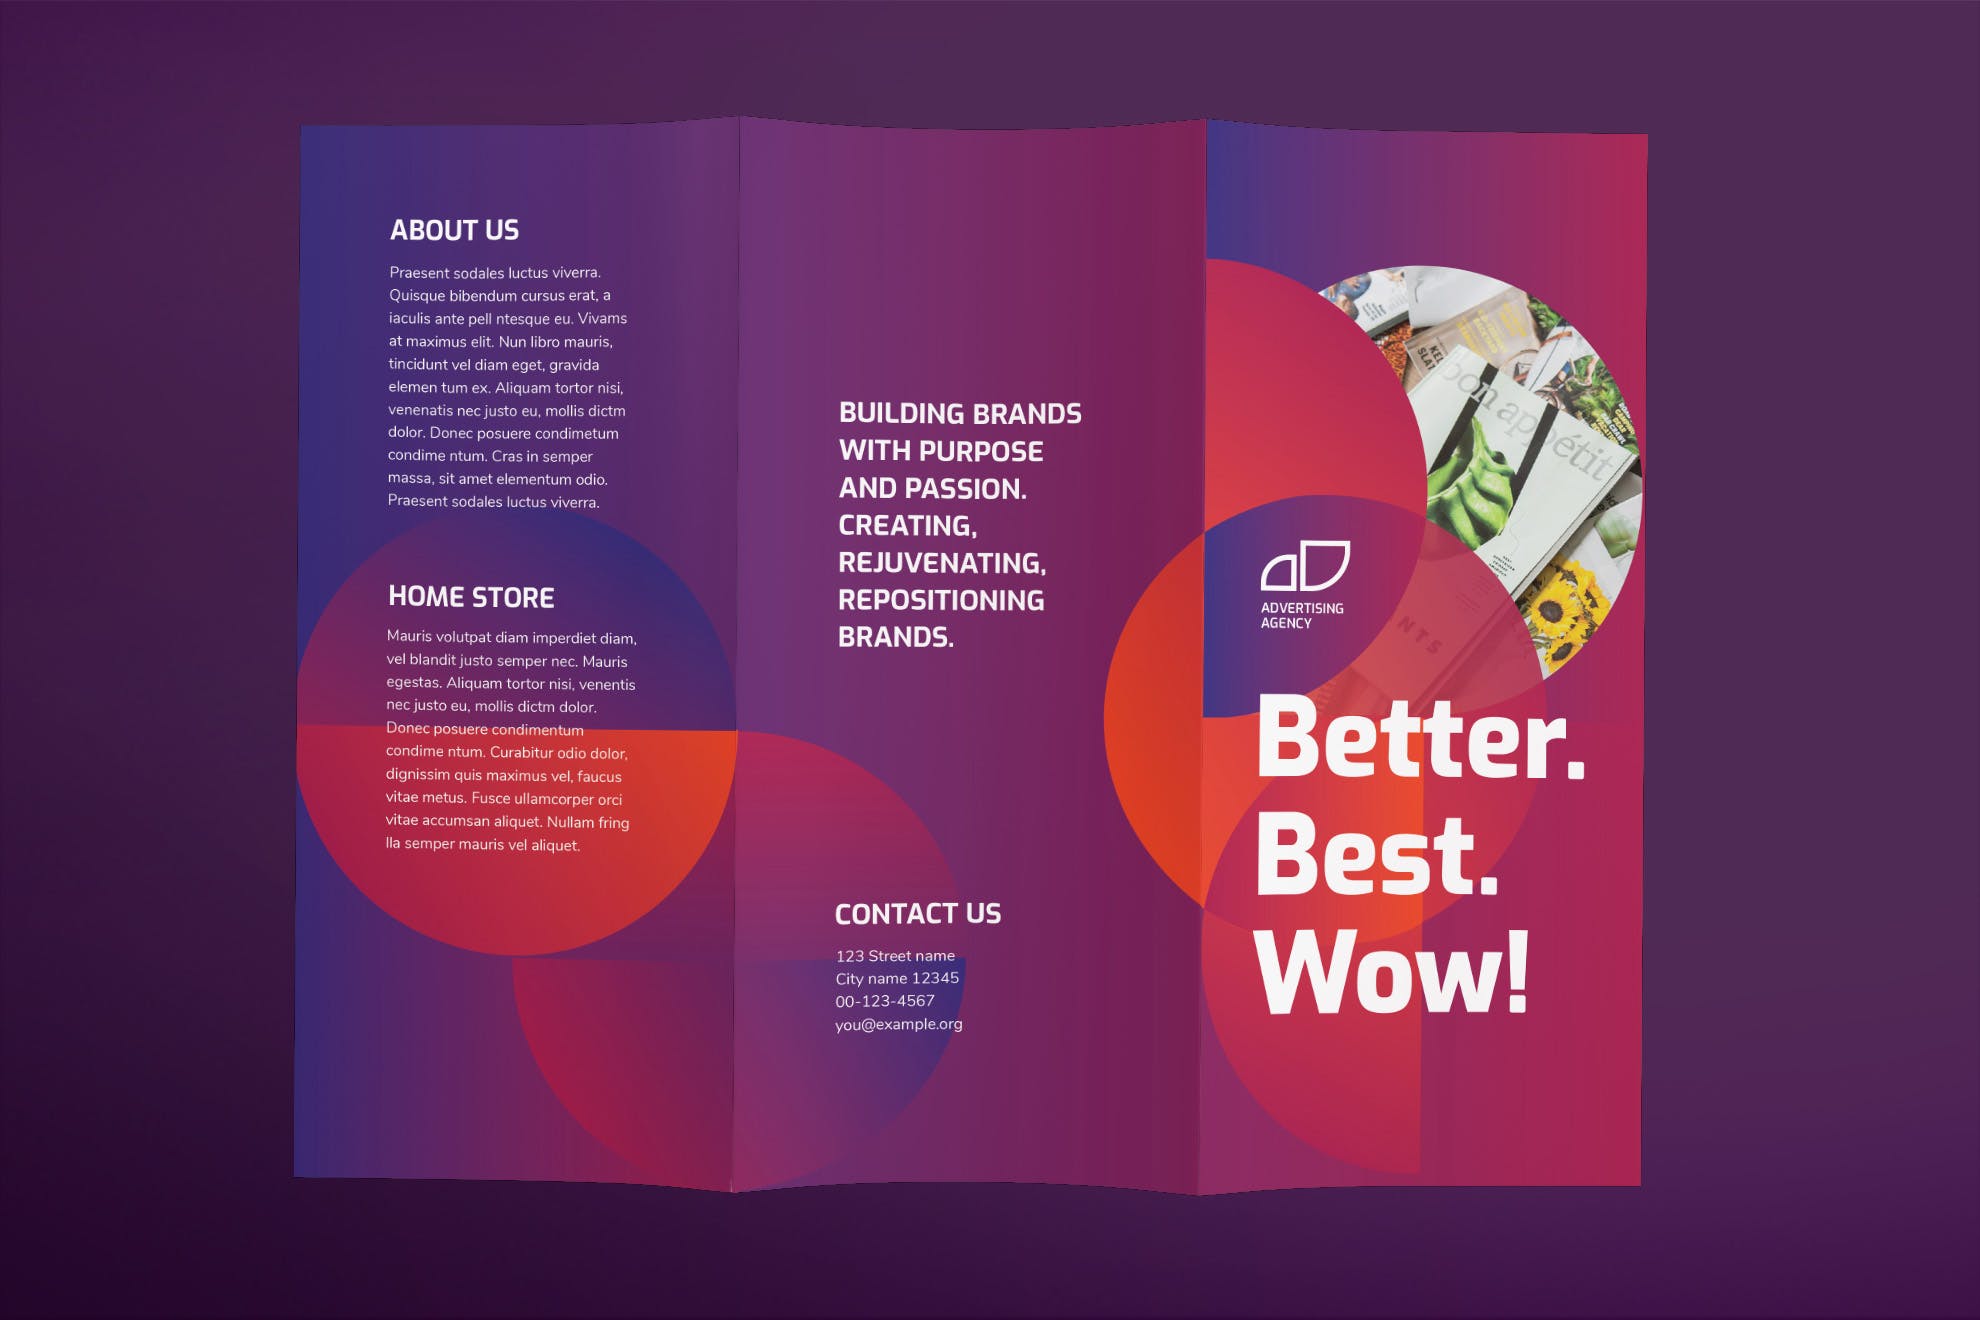 三折页设计风格广告代理公司传单设计模板 Advertising Agency Brochure Trifold插图(1)